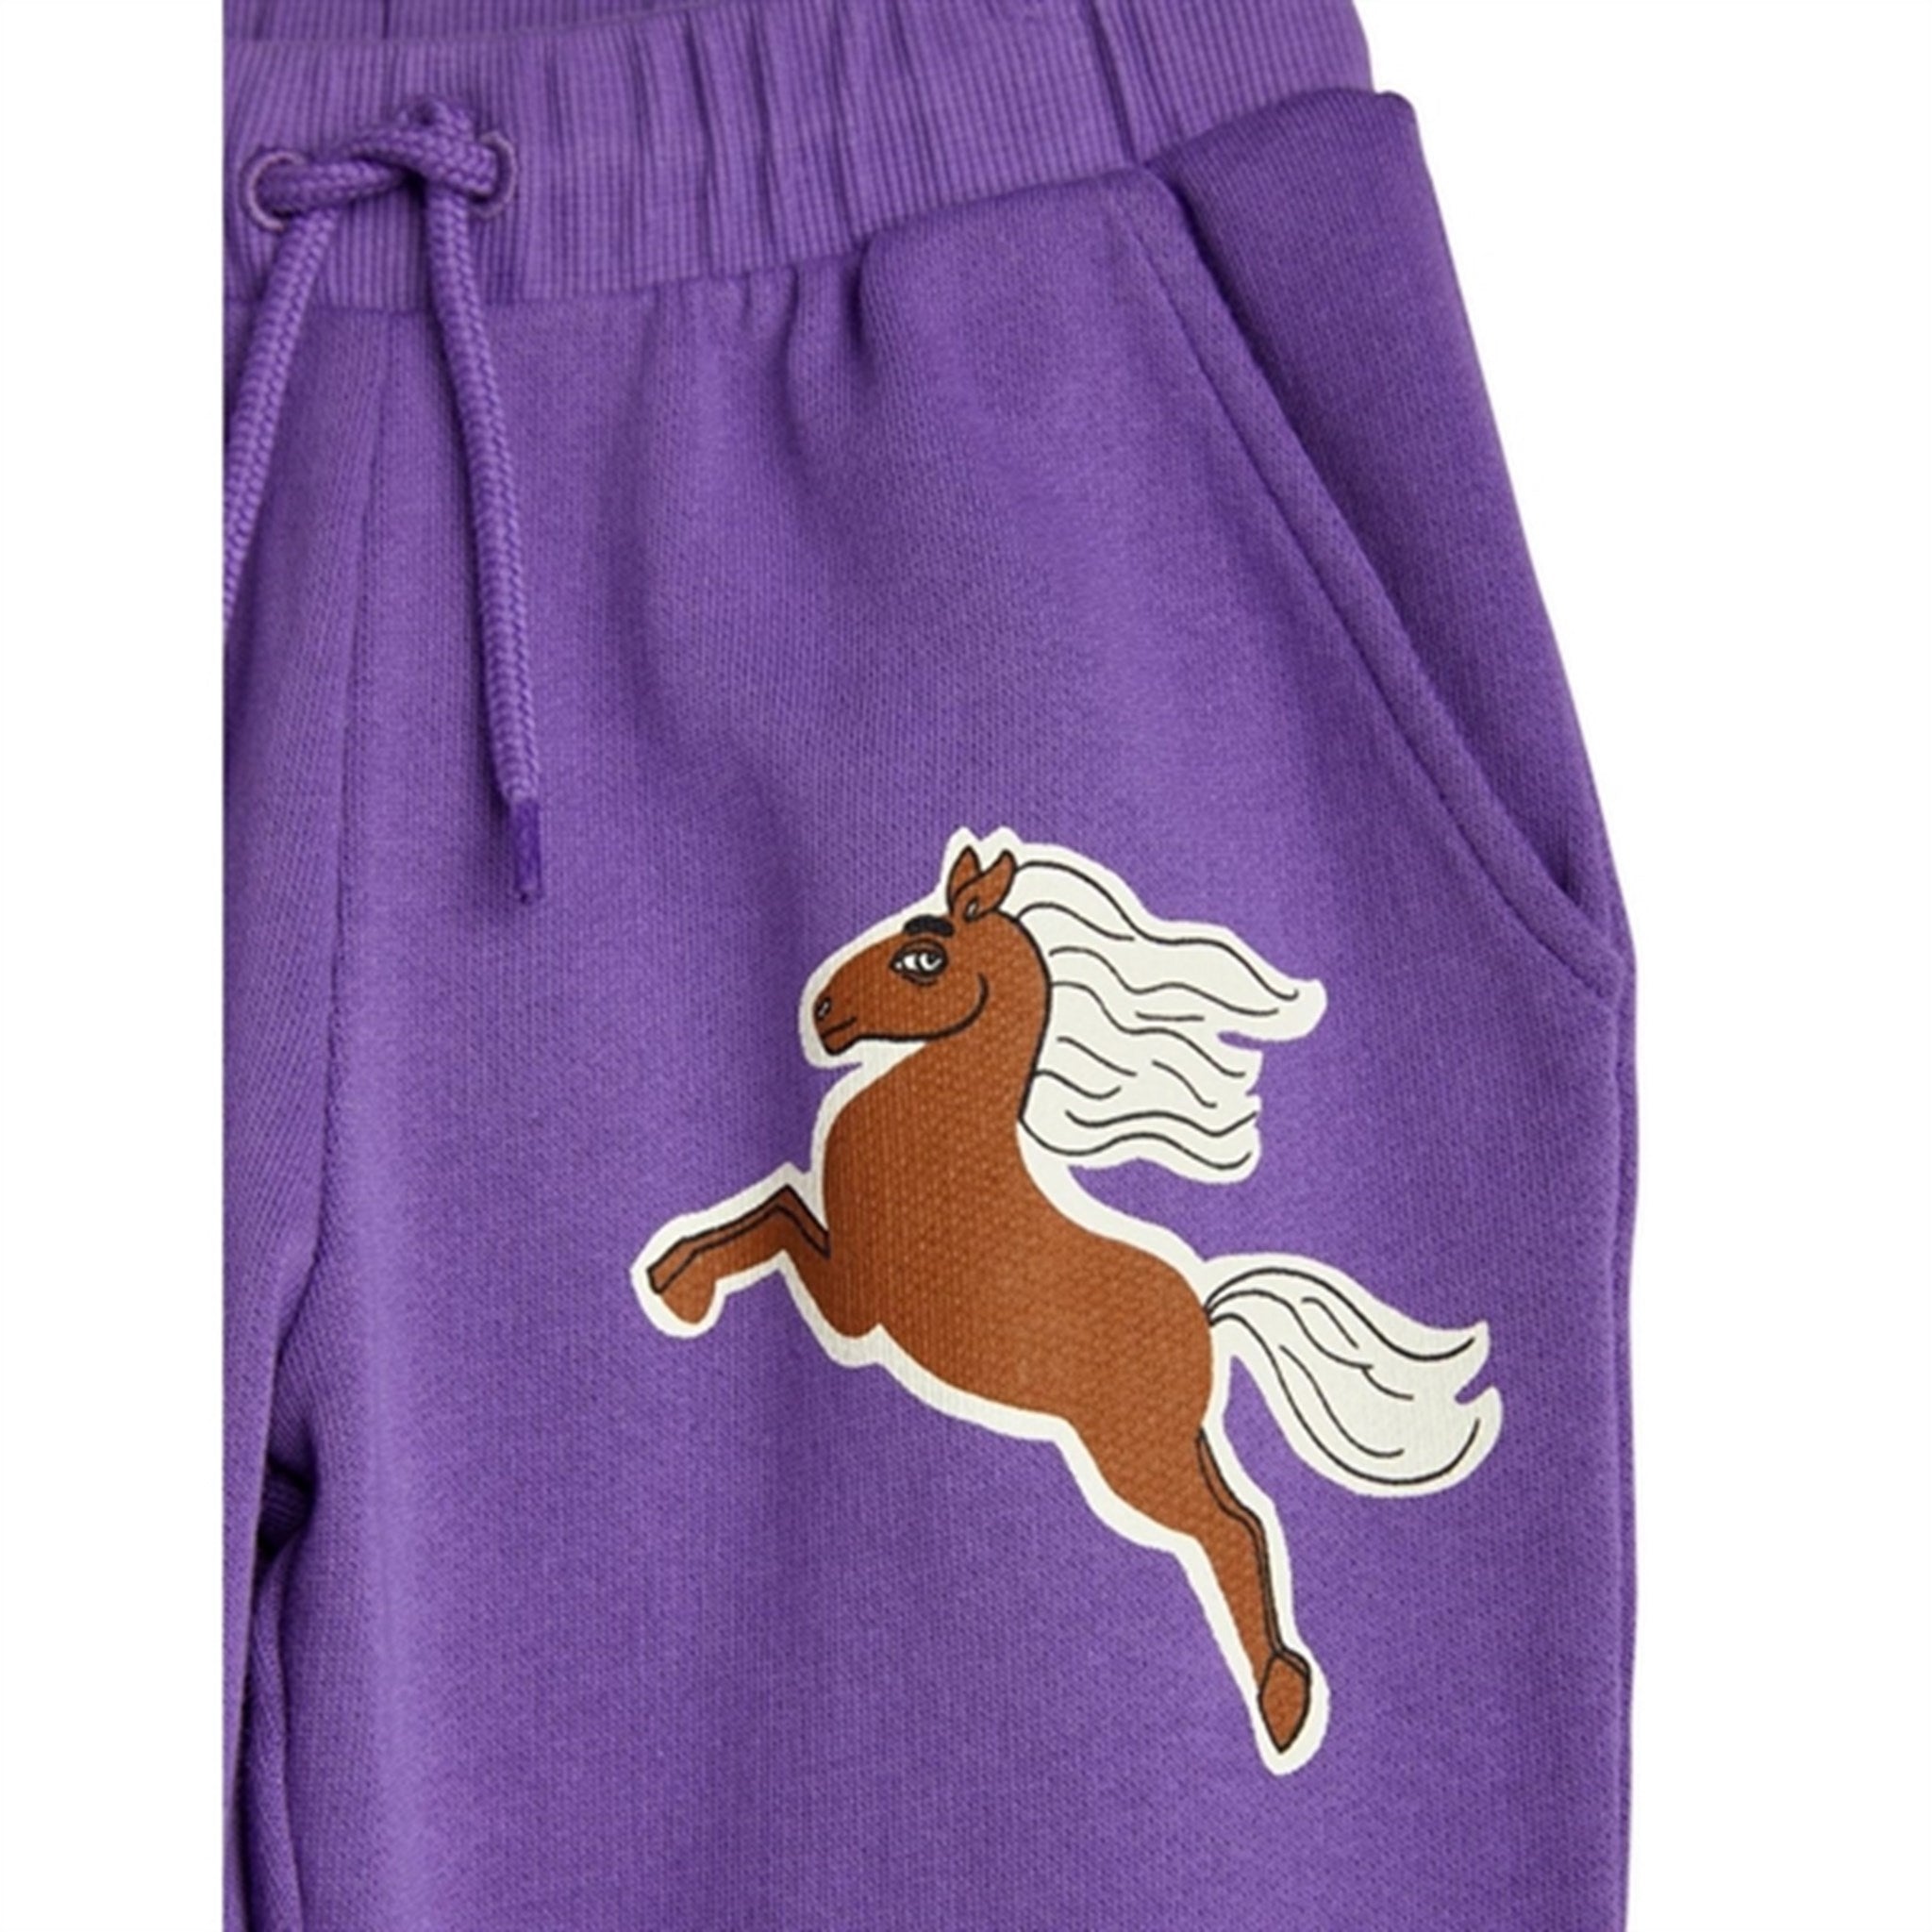 Mini Rodini Horses Sp Sweatpants Purple 3